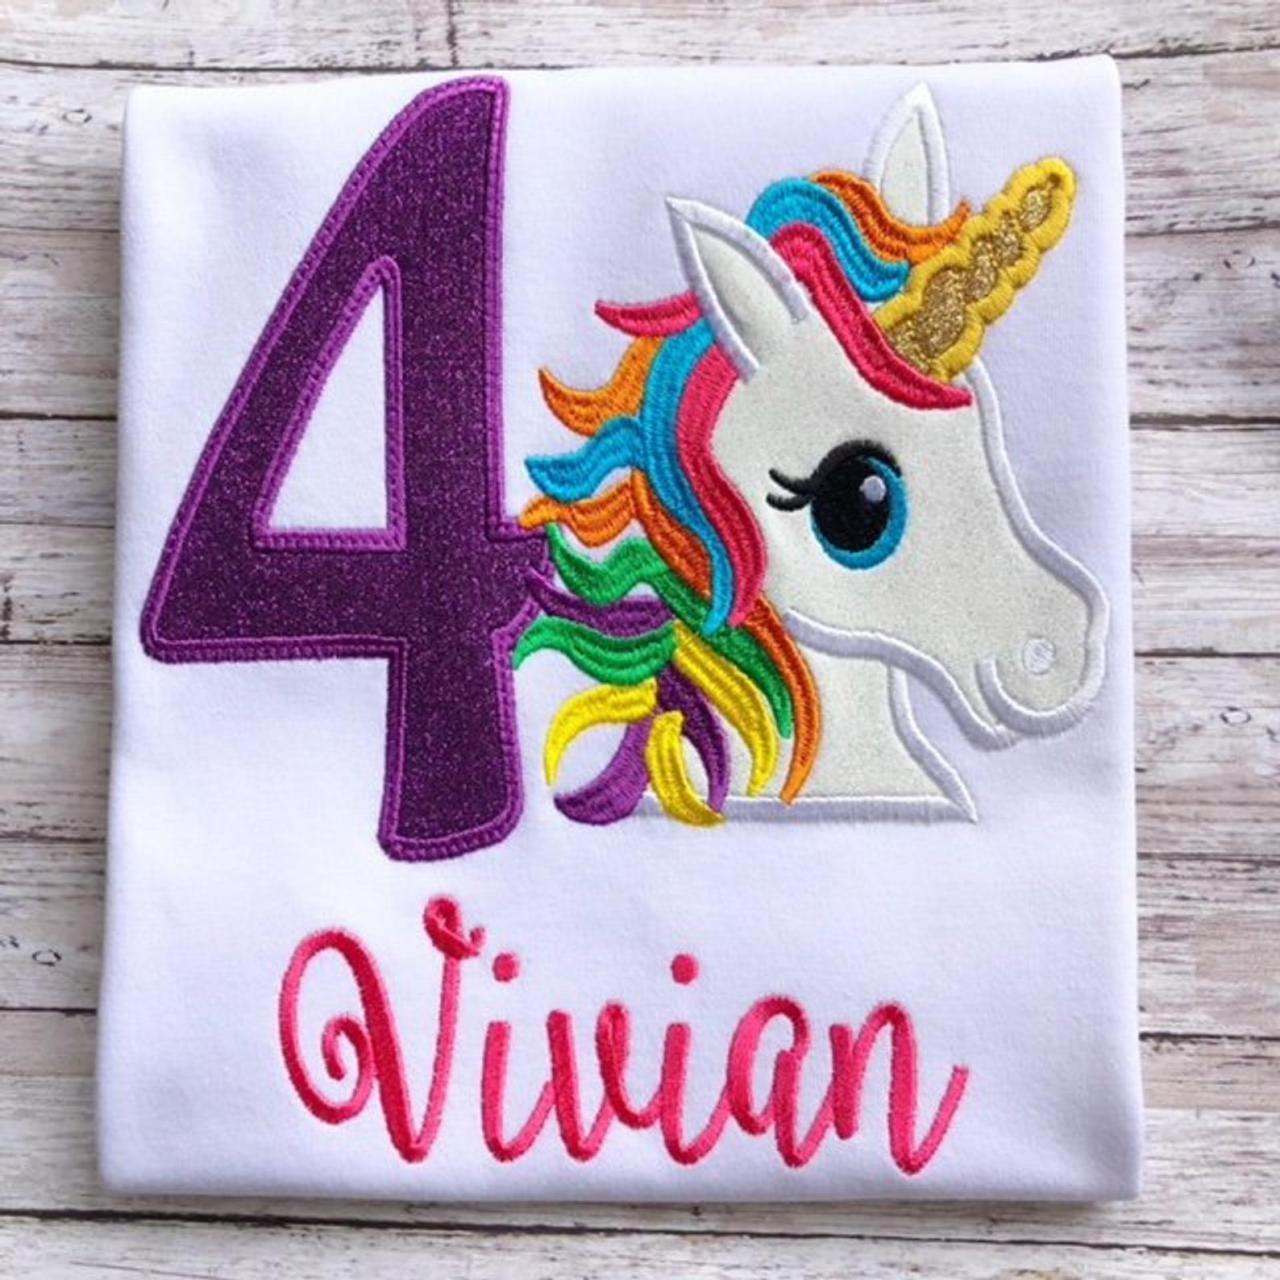 Unicorn Birthday Shirt / Embroidered Birthday Shirt / Rainbow Unicorn Birthday Shirt / Custom Embroidered Shirt / Monogram / Birthday Shirt.